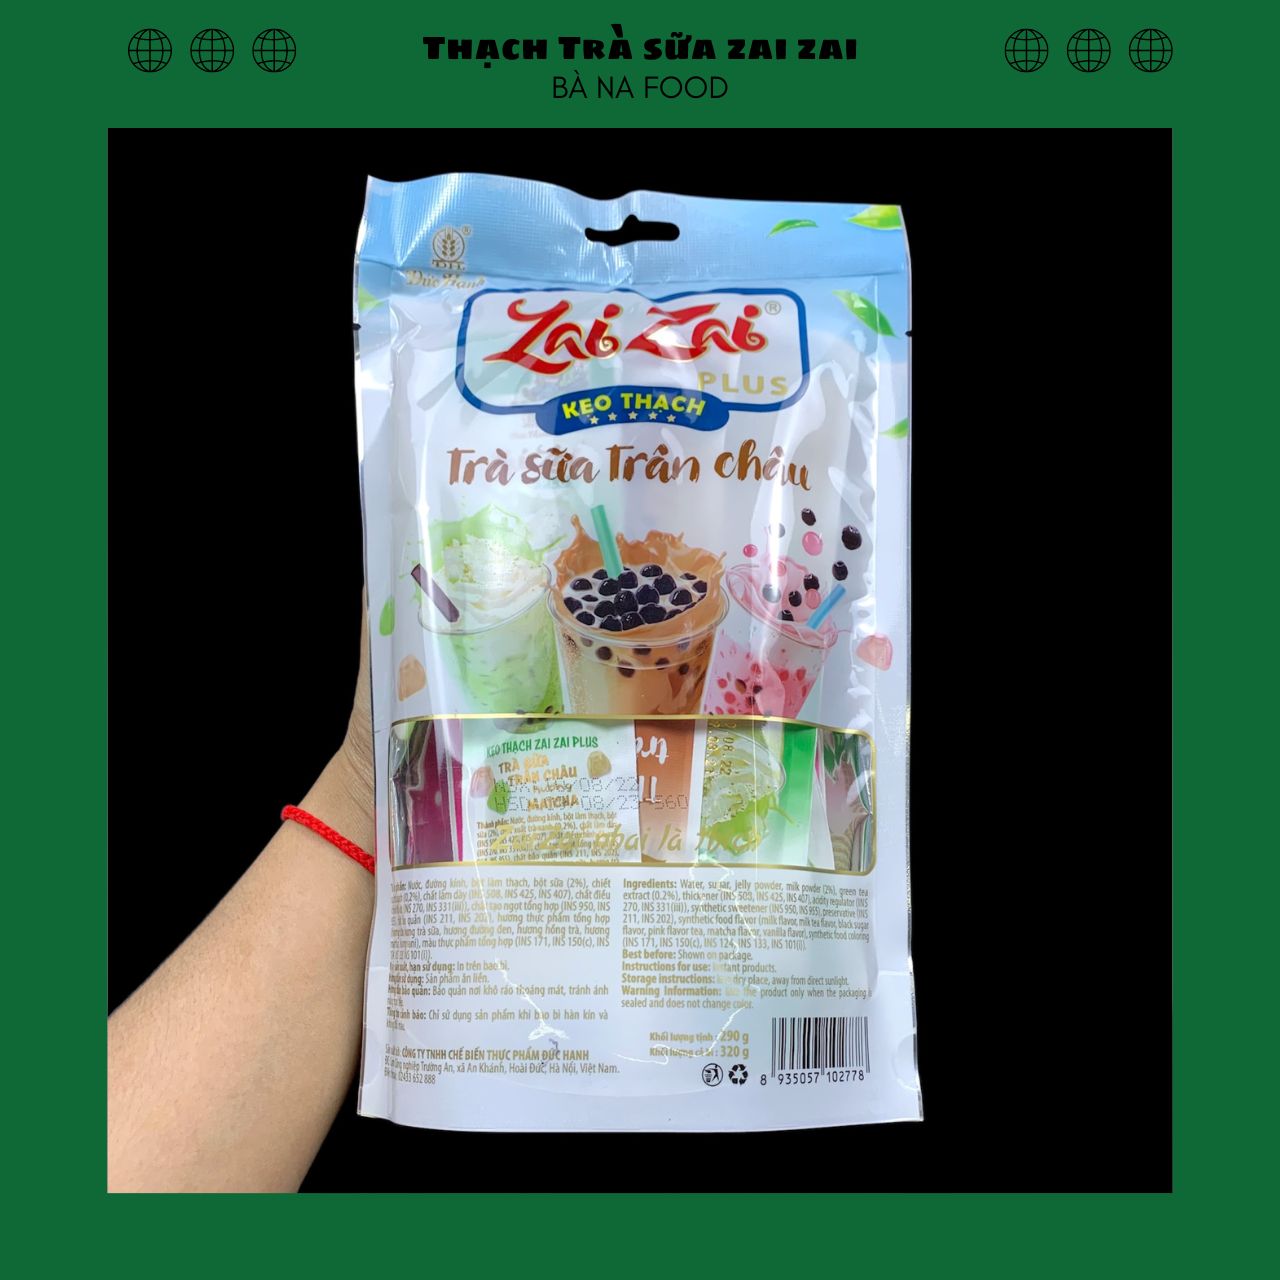 [FREESHIP]Kẹo thạch zaizai vị trà sữa Đức Hạnh - Bà Na Food